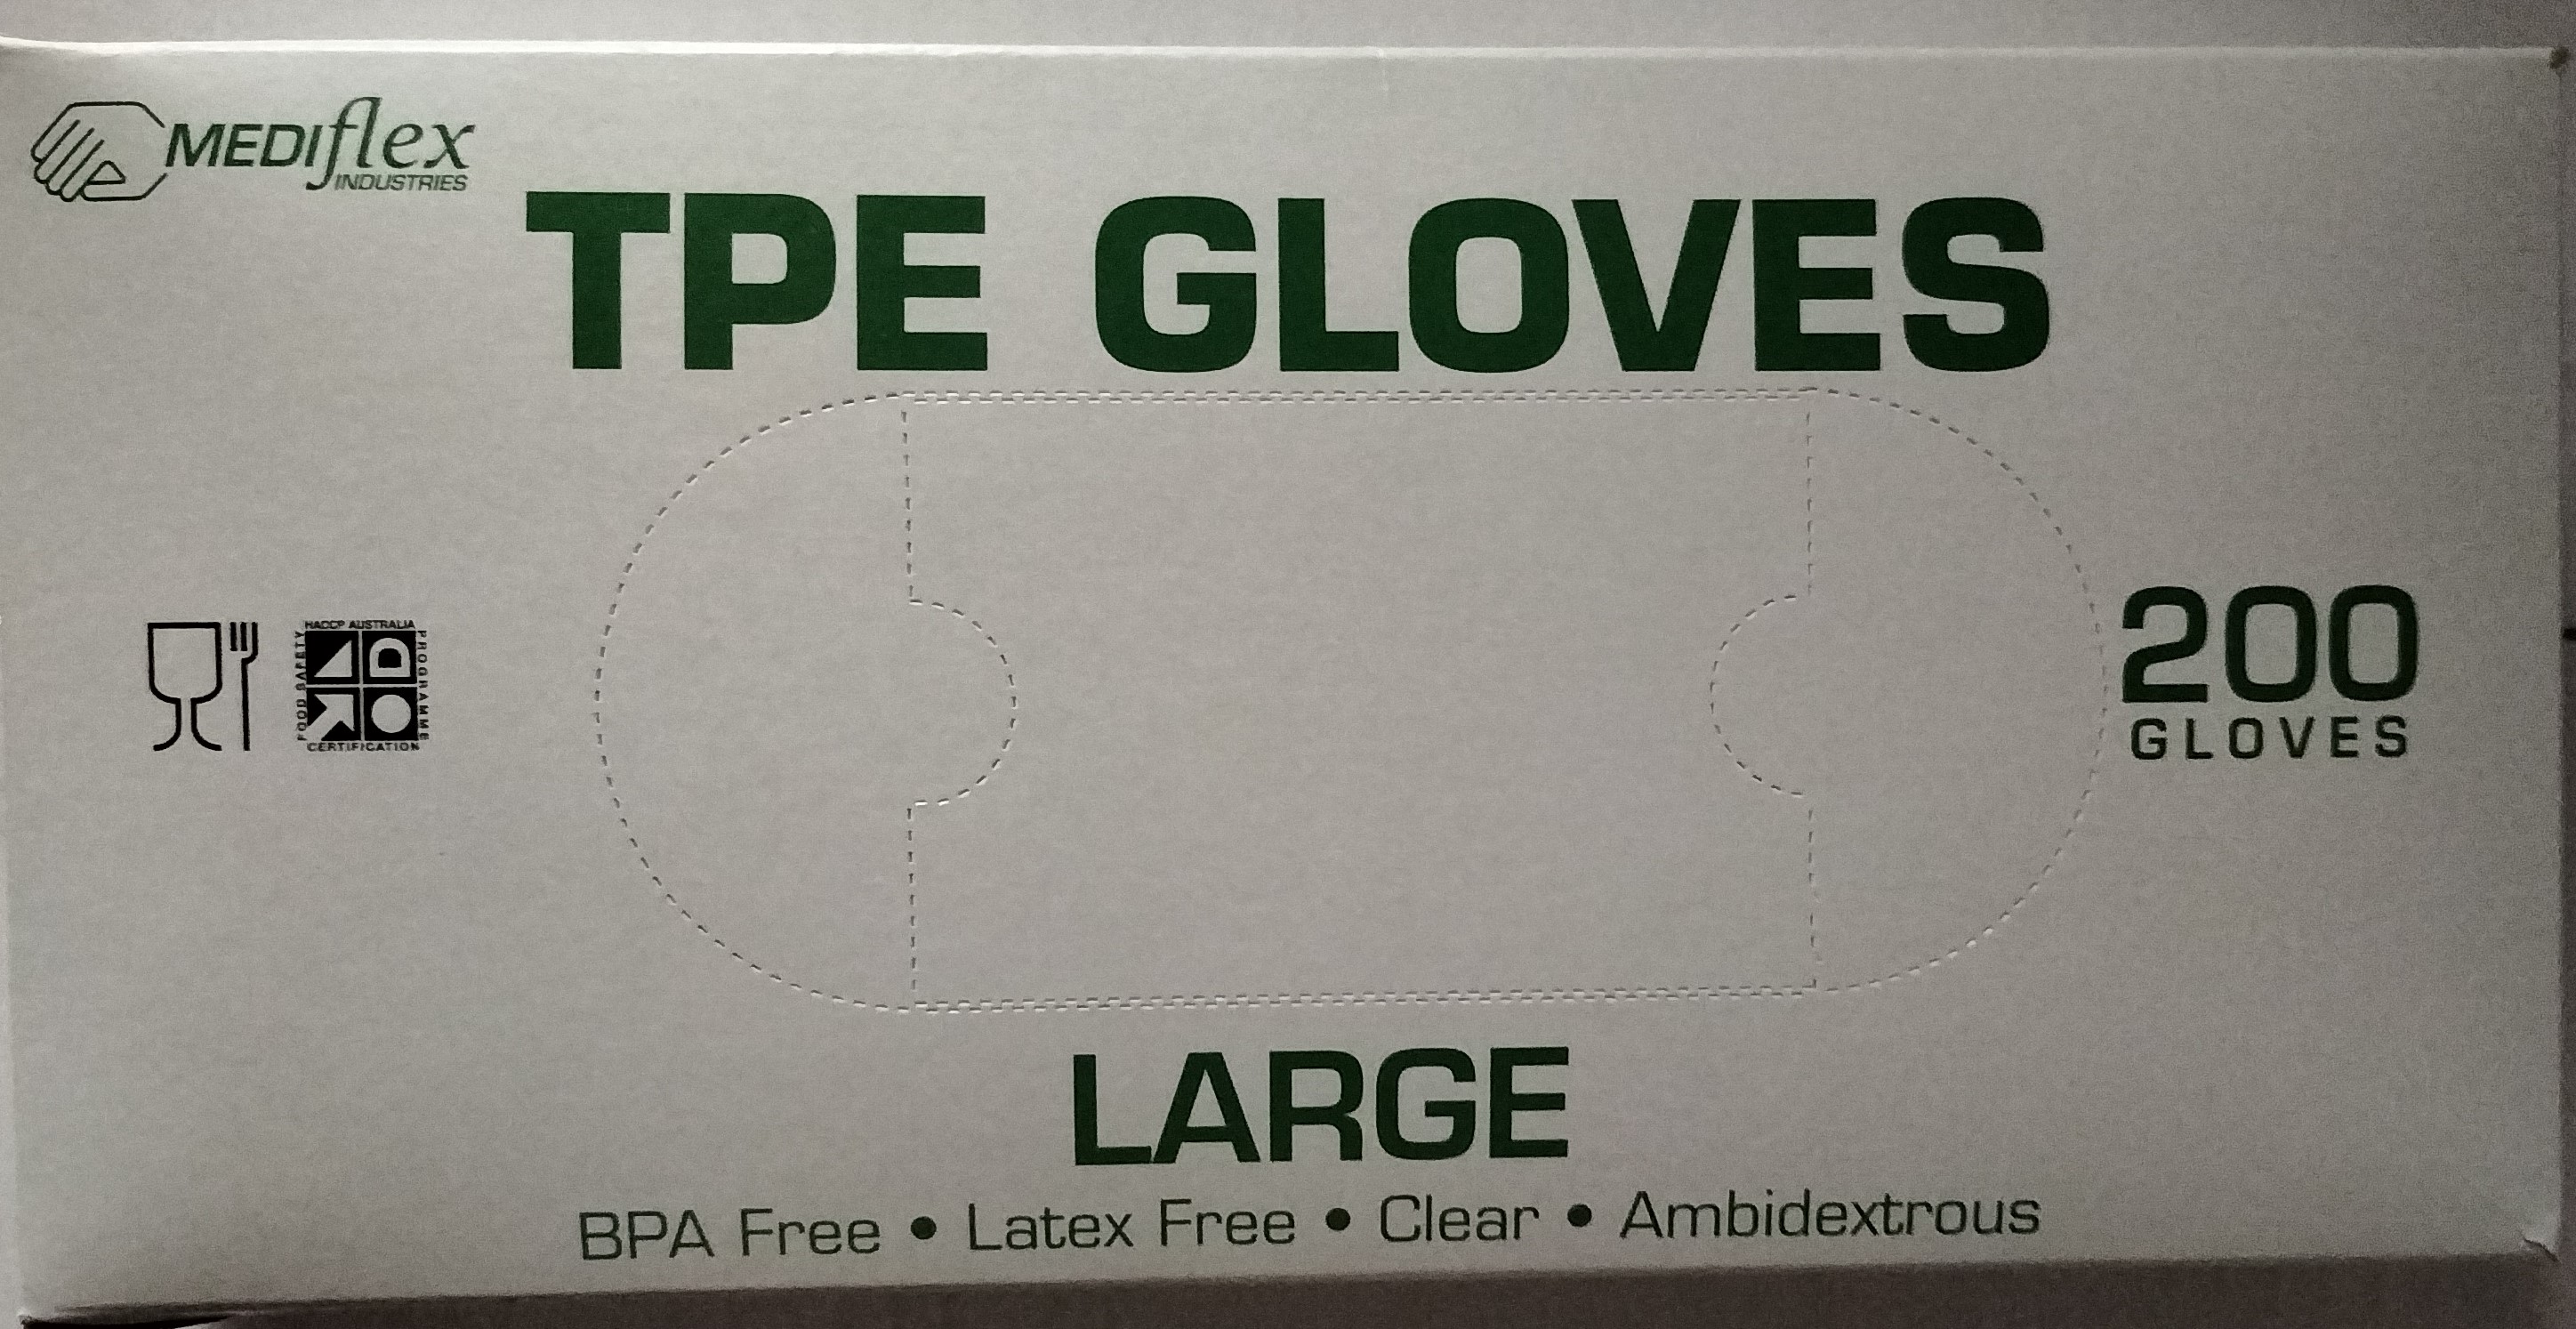 Thermoplastic Elastic Gloves Mediflex Lge Ctn (10 x 200)